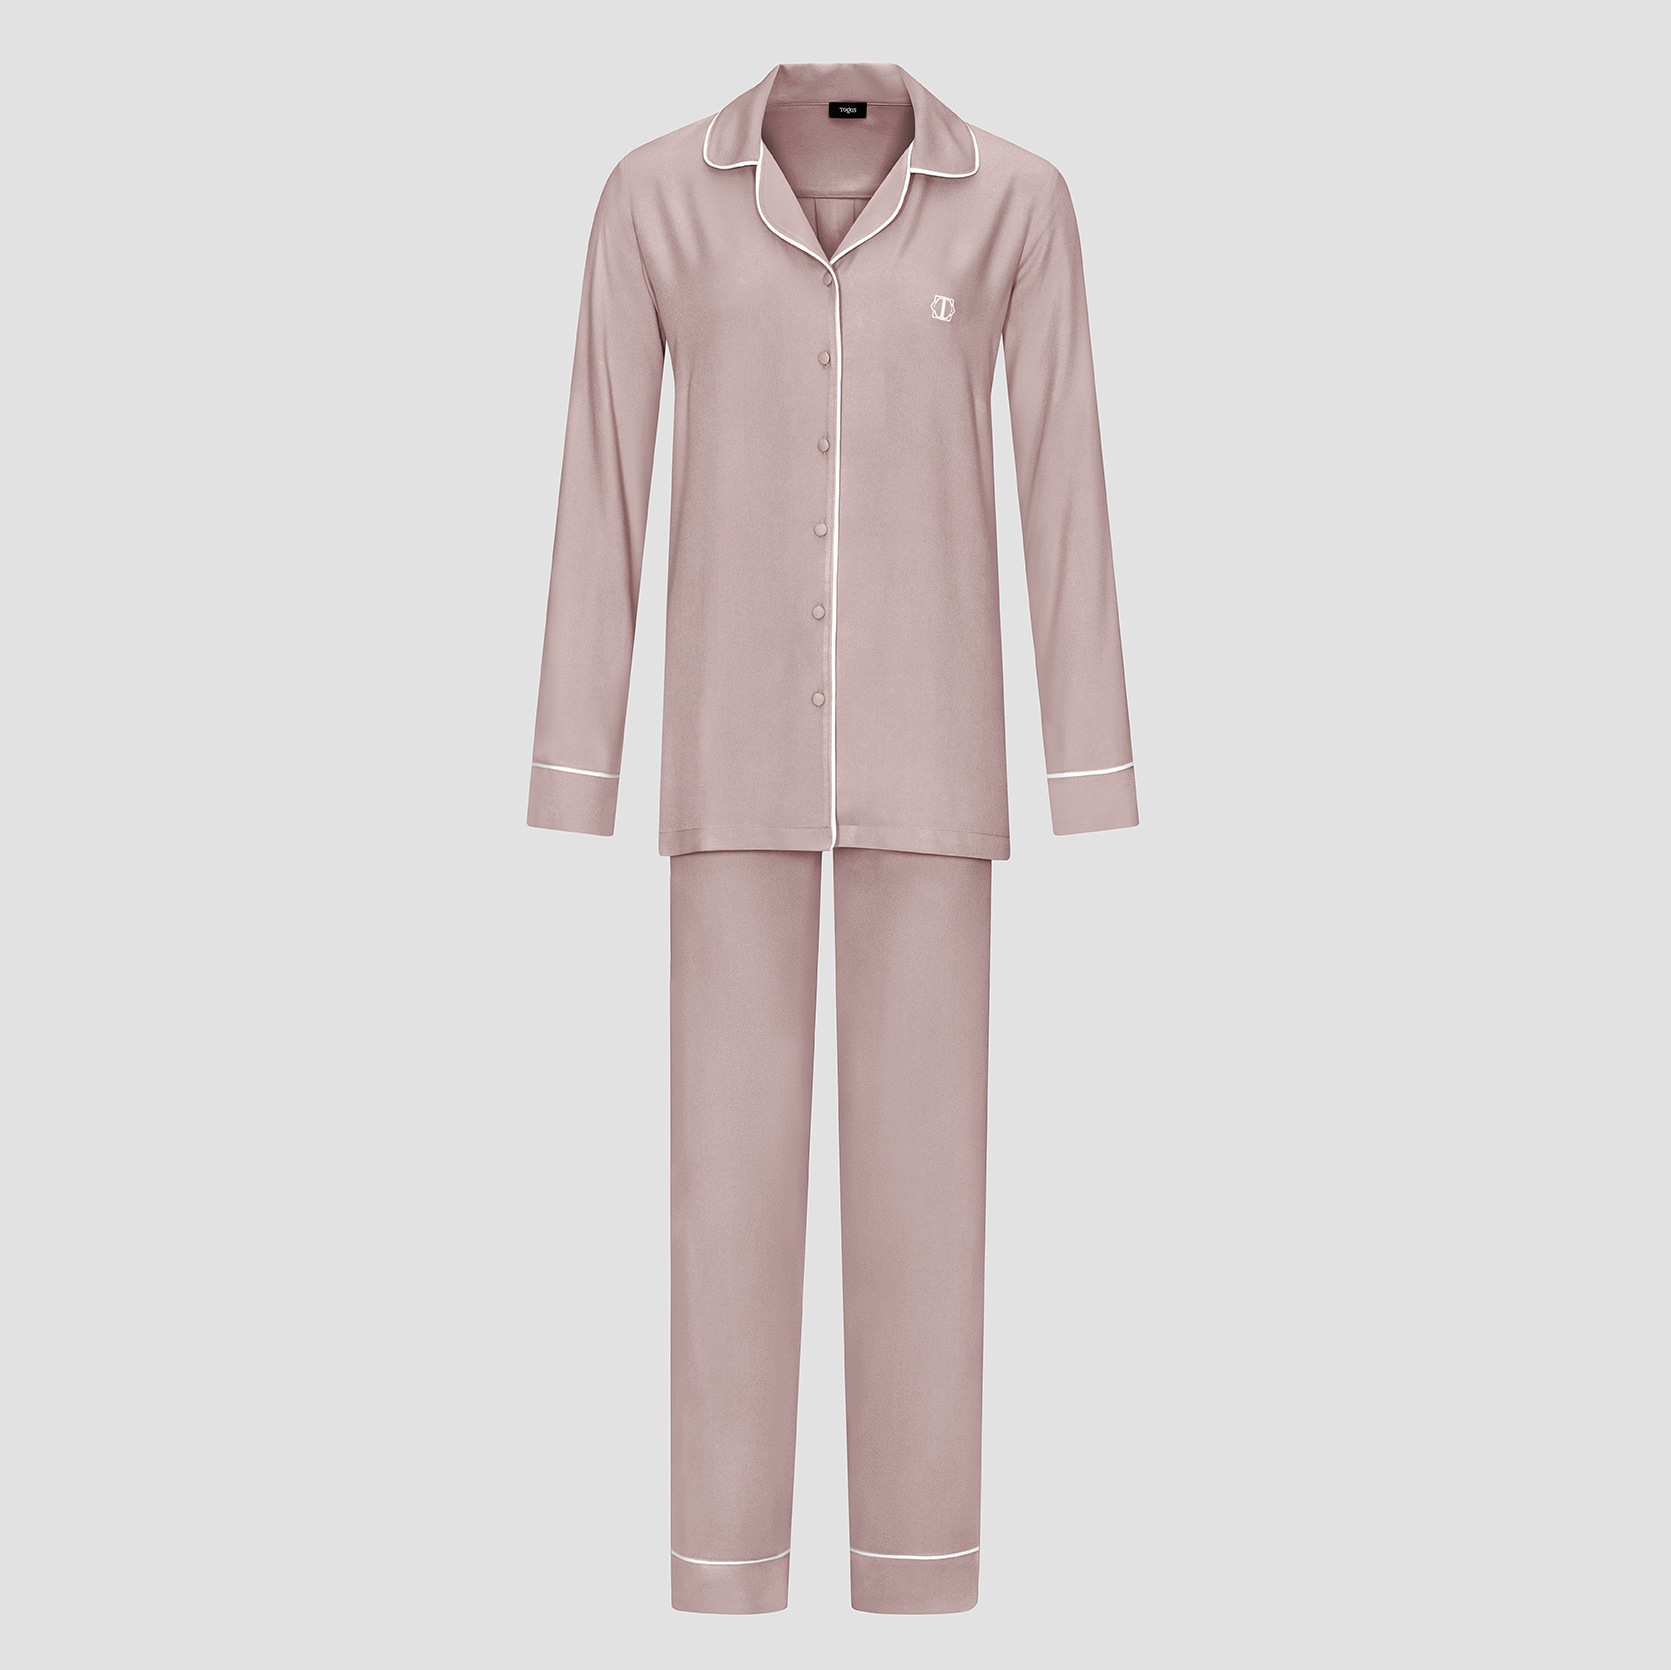 Пижама женская Togas Рамель розовая 2 предмета пижама сорочка брюки